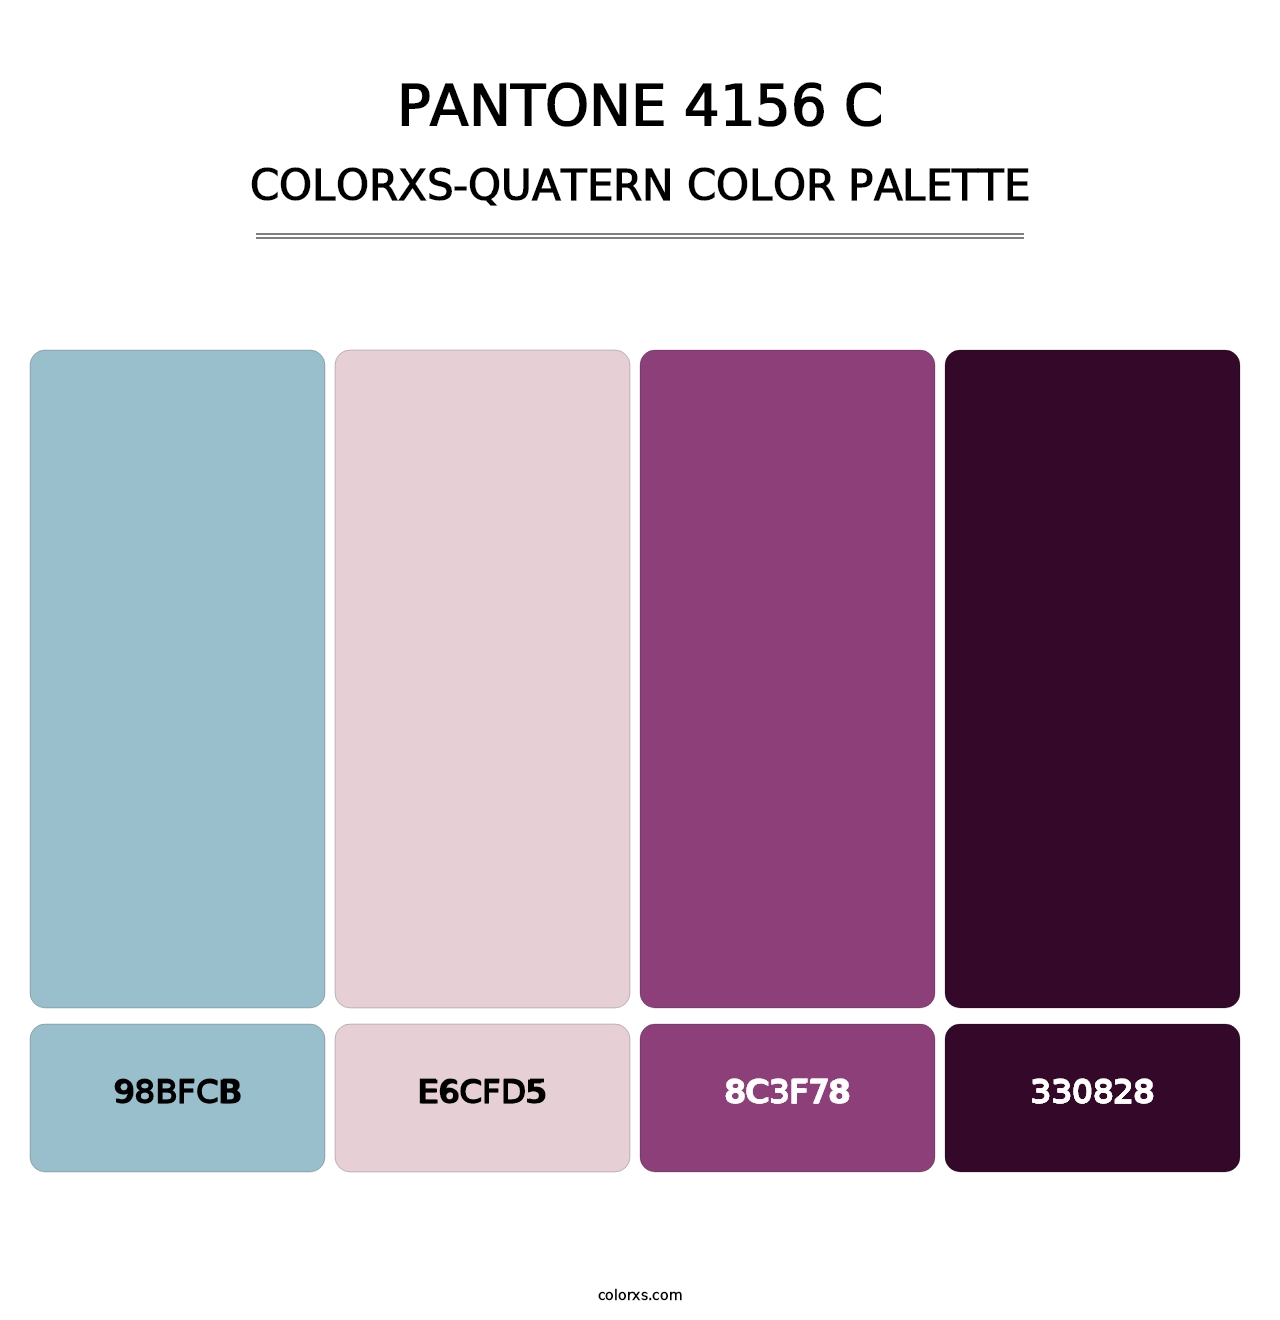 PANTONE 4156 C - Colorxs Quatern Palette